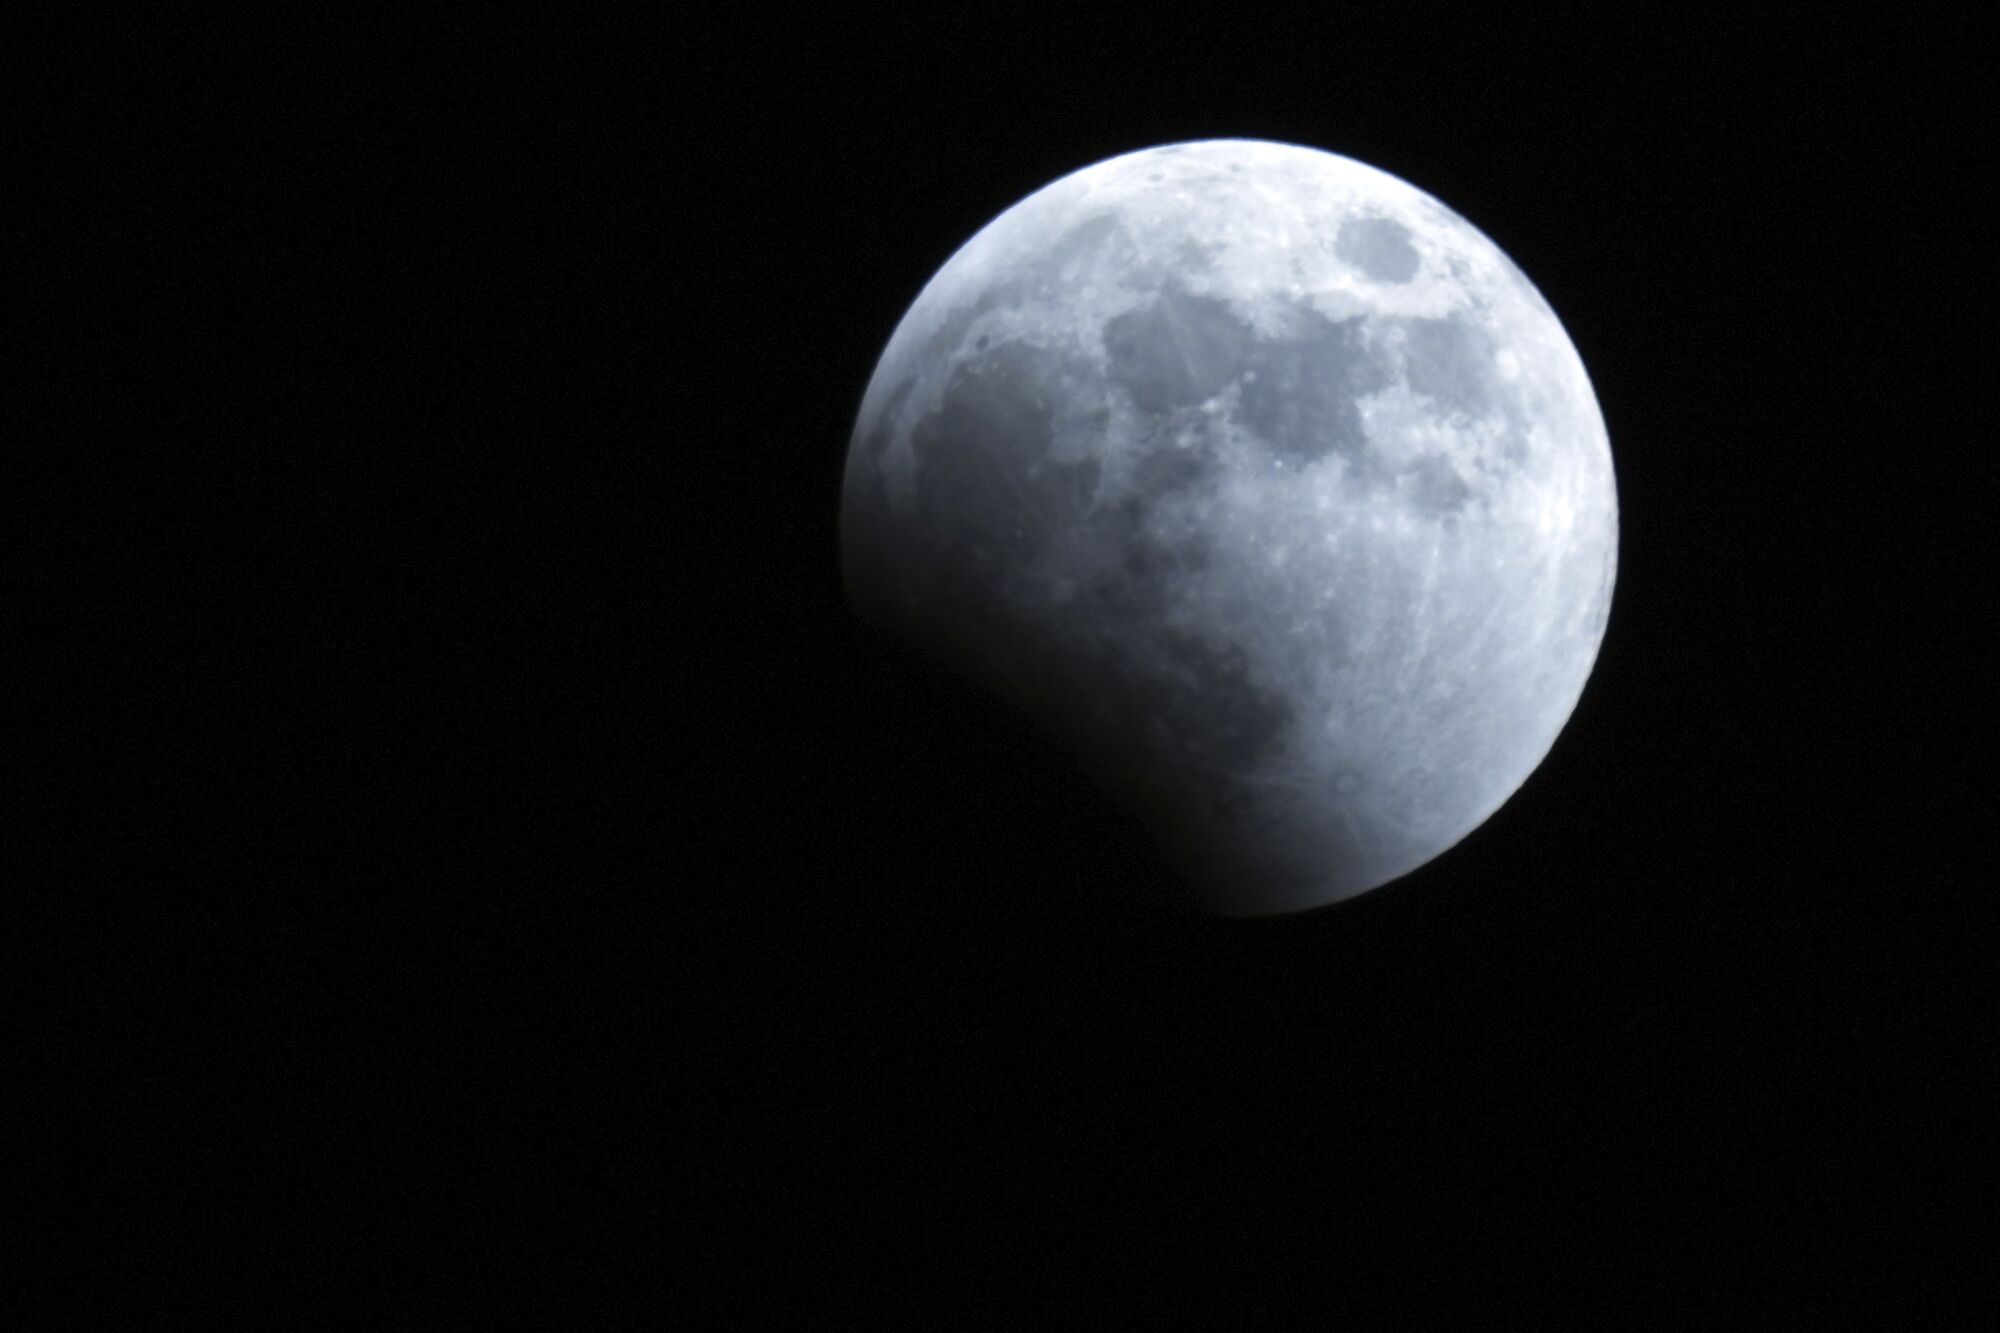 سایه زمین در طول ماه گرفتگی در یوکوهاما نزدیک توکیو شروع به پوشاندن ماه می کند.